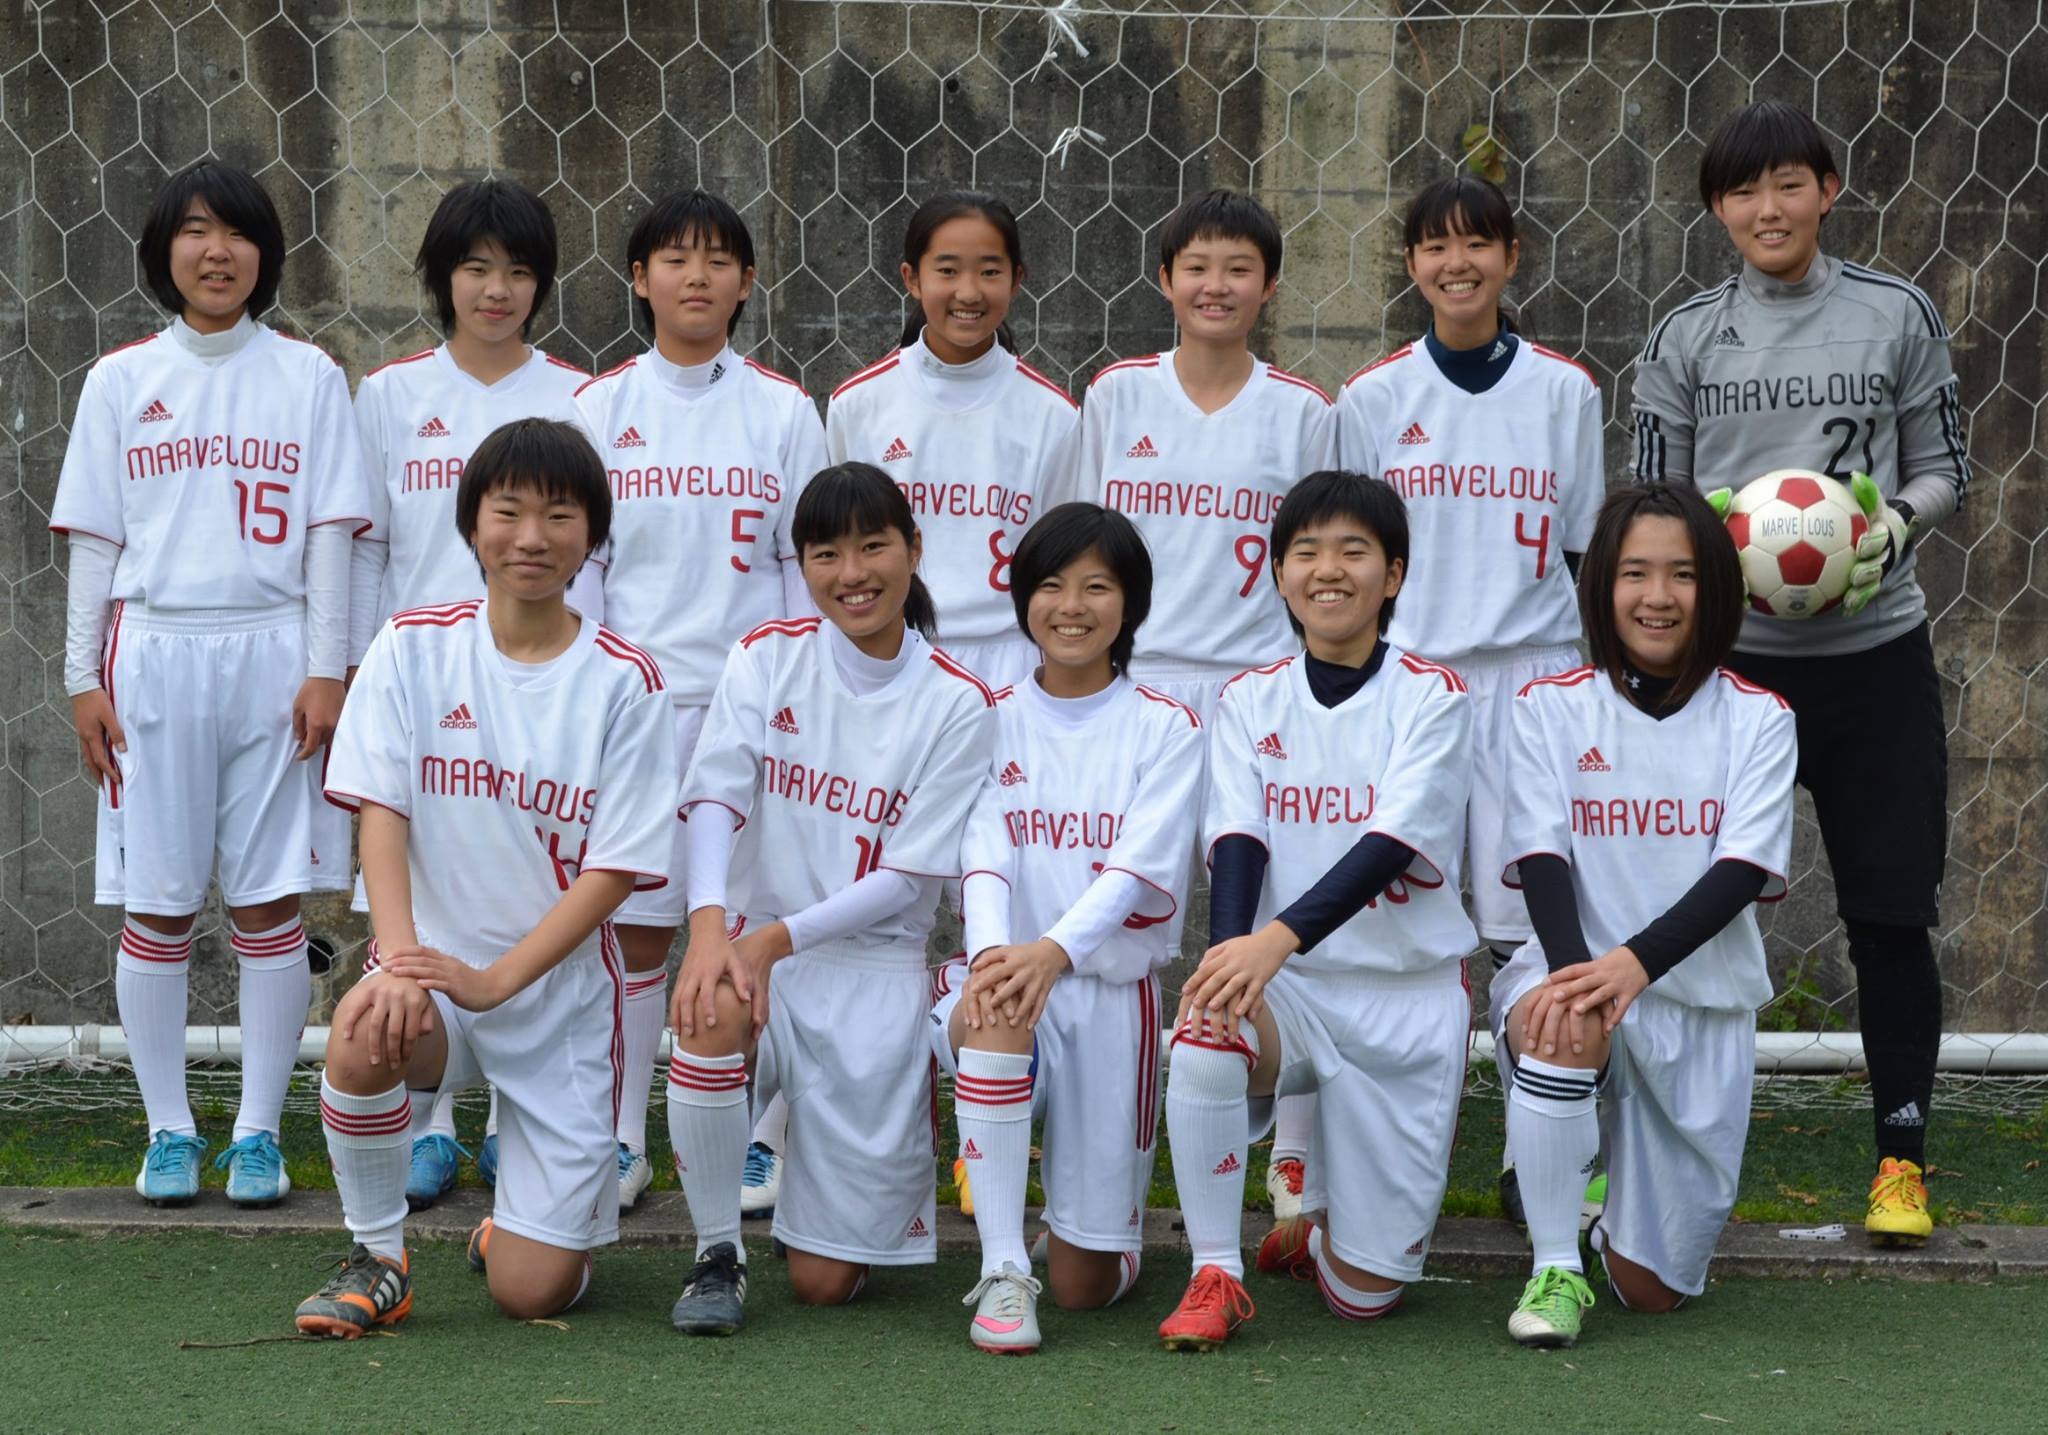 株式会社Glanzは、マーベラス福岡フットボールクラブ女子サッカーチームの活動を応援しています。